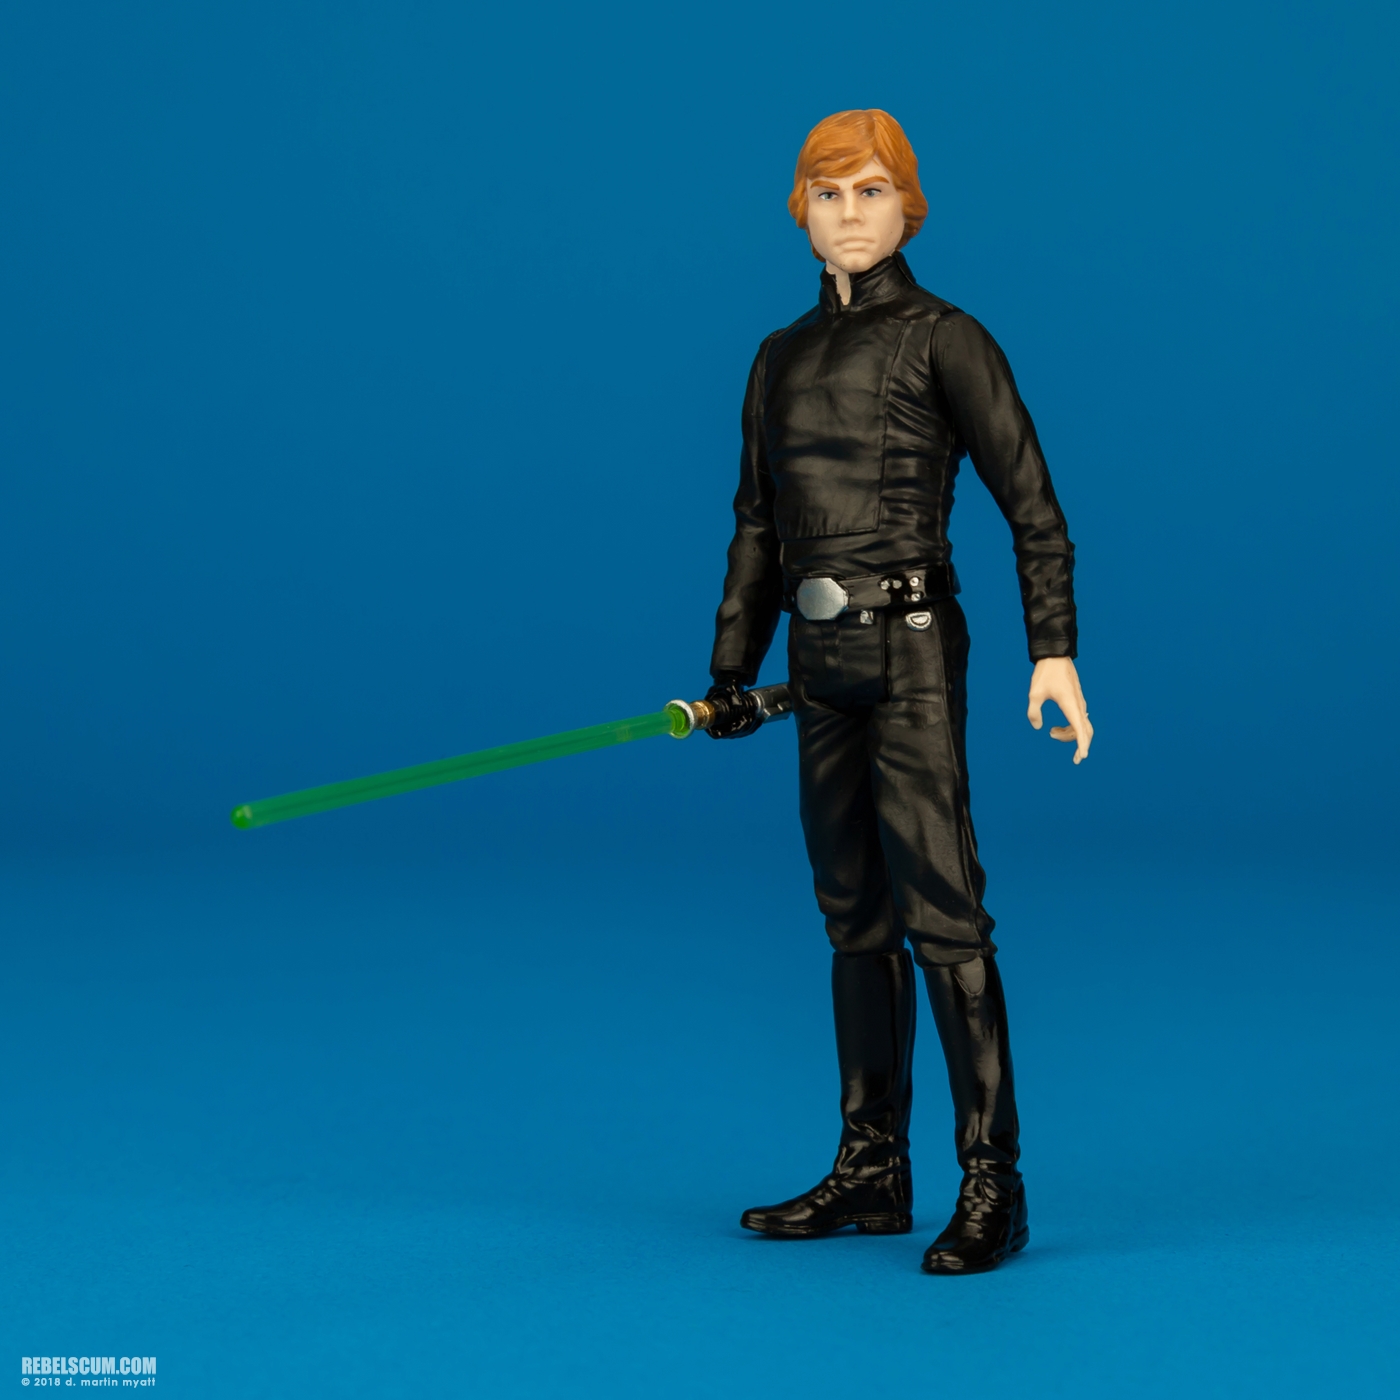 Luke-Skywalker-ROTJ-Solo-Force-Link-Hasbro-006.jpg